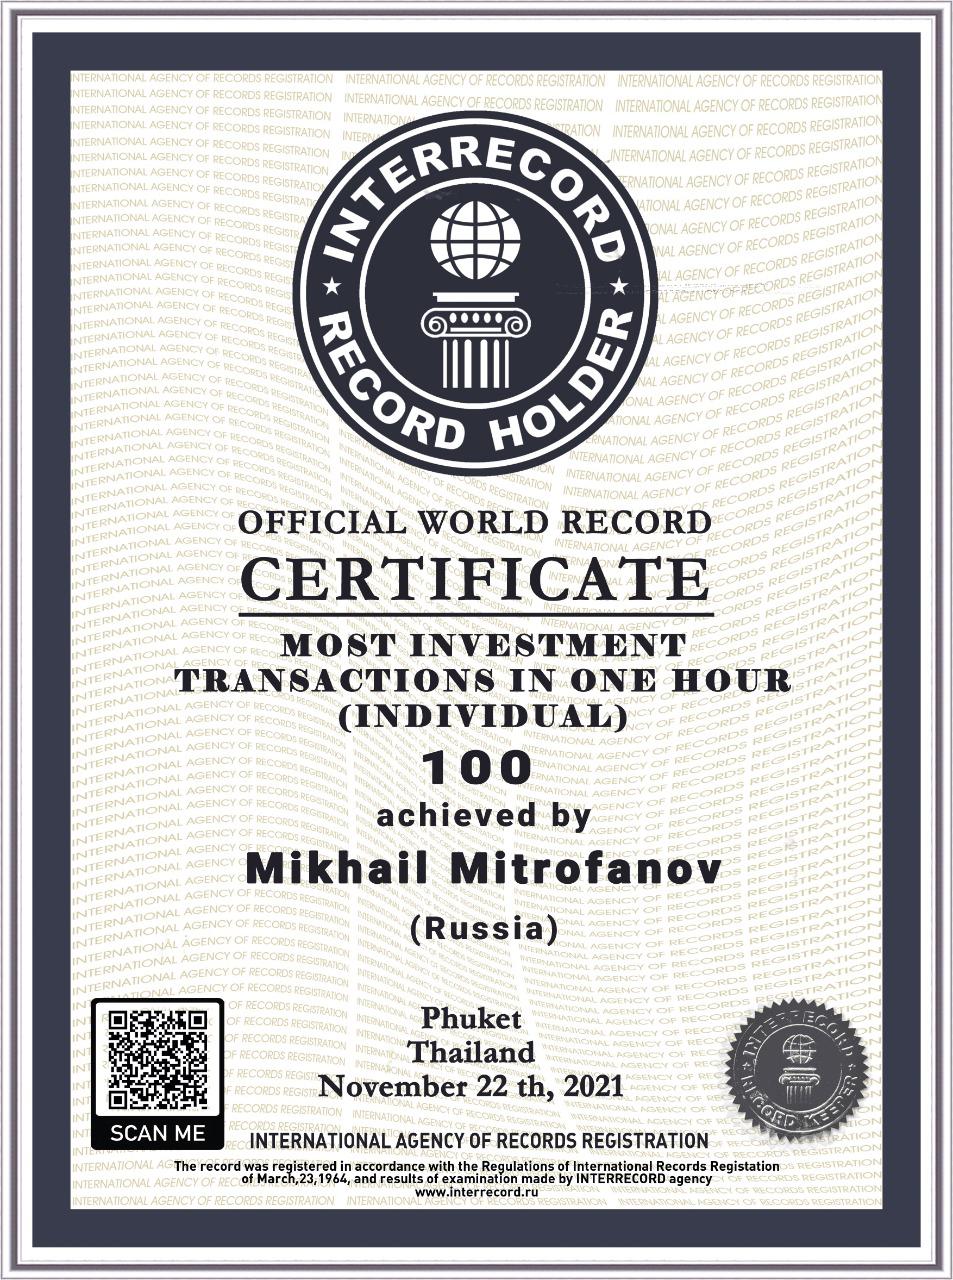 Инвестор Михаил Митрофанов установил мировой рекорд на фондовом рынке